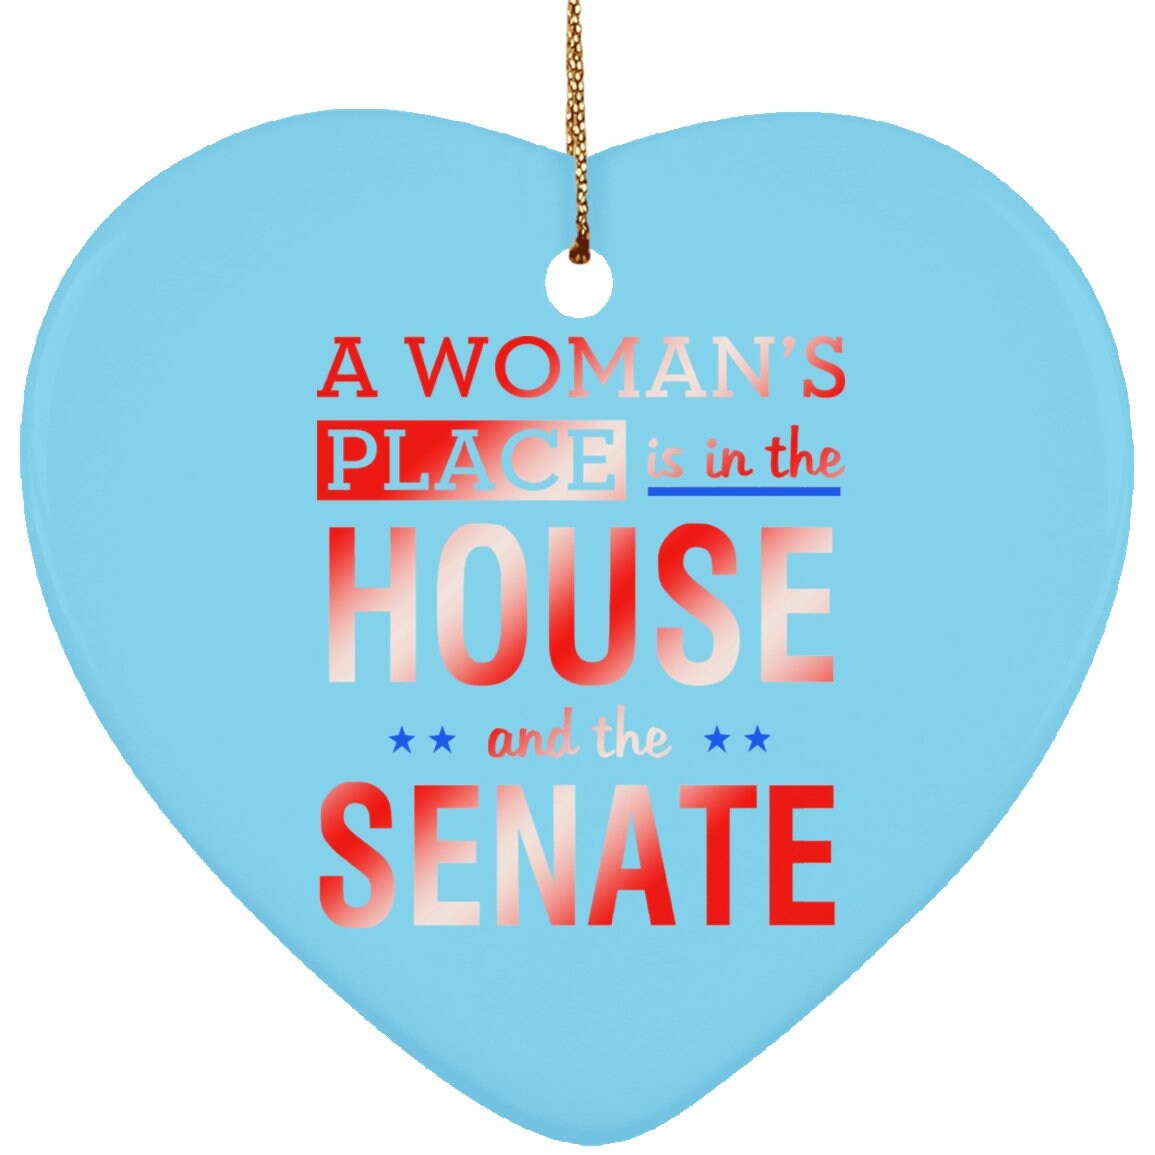 مكان المرأة في مجلس النواب ومجلس الشيوخ || زخرفة القلب السيراميك - plusminusco.com